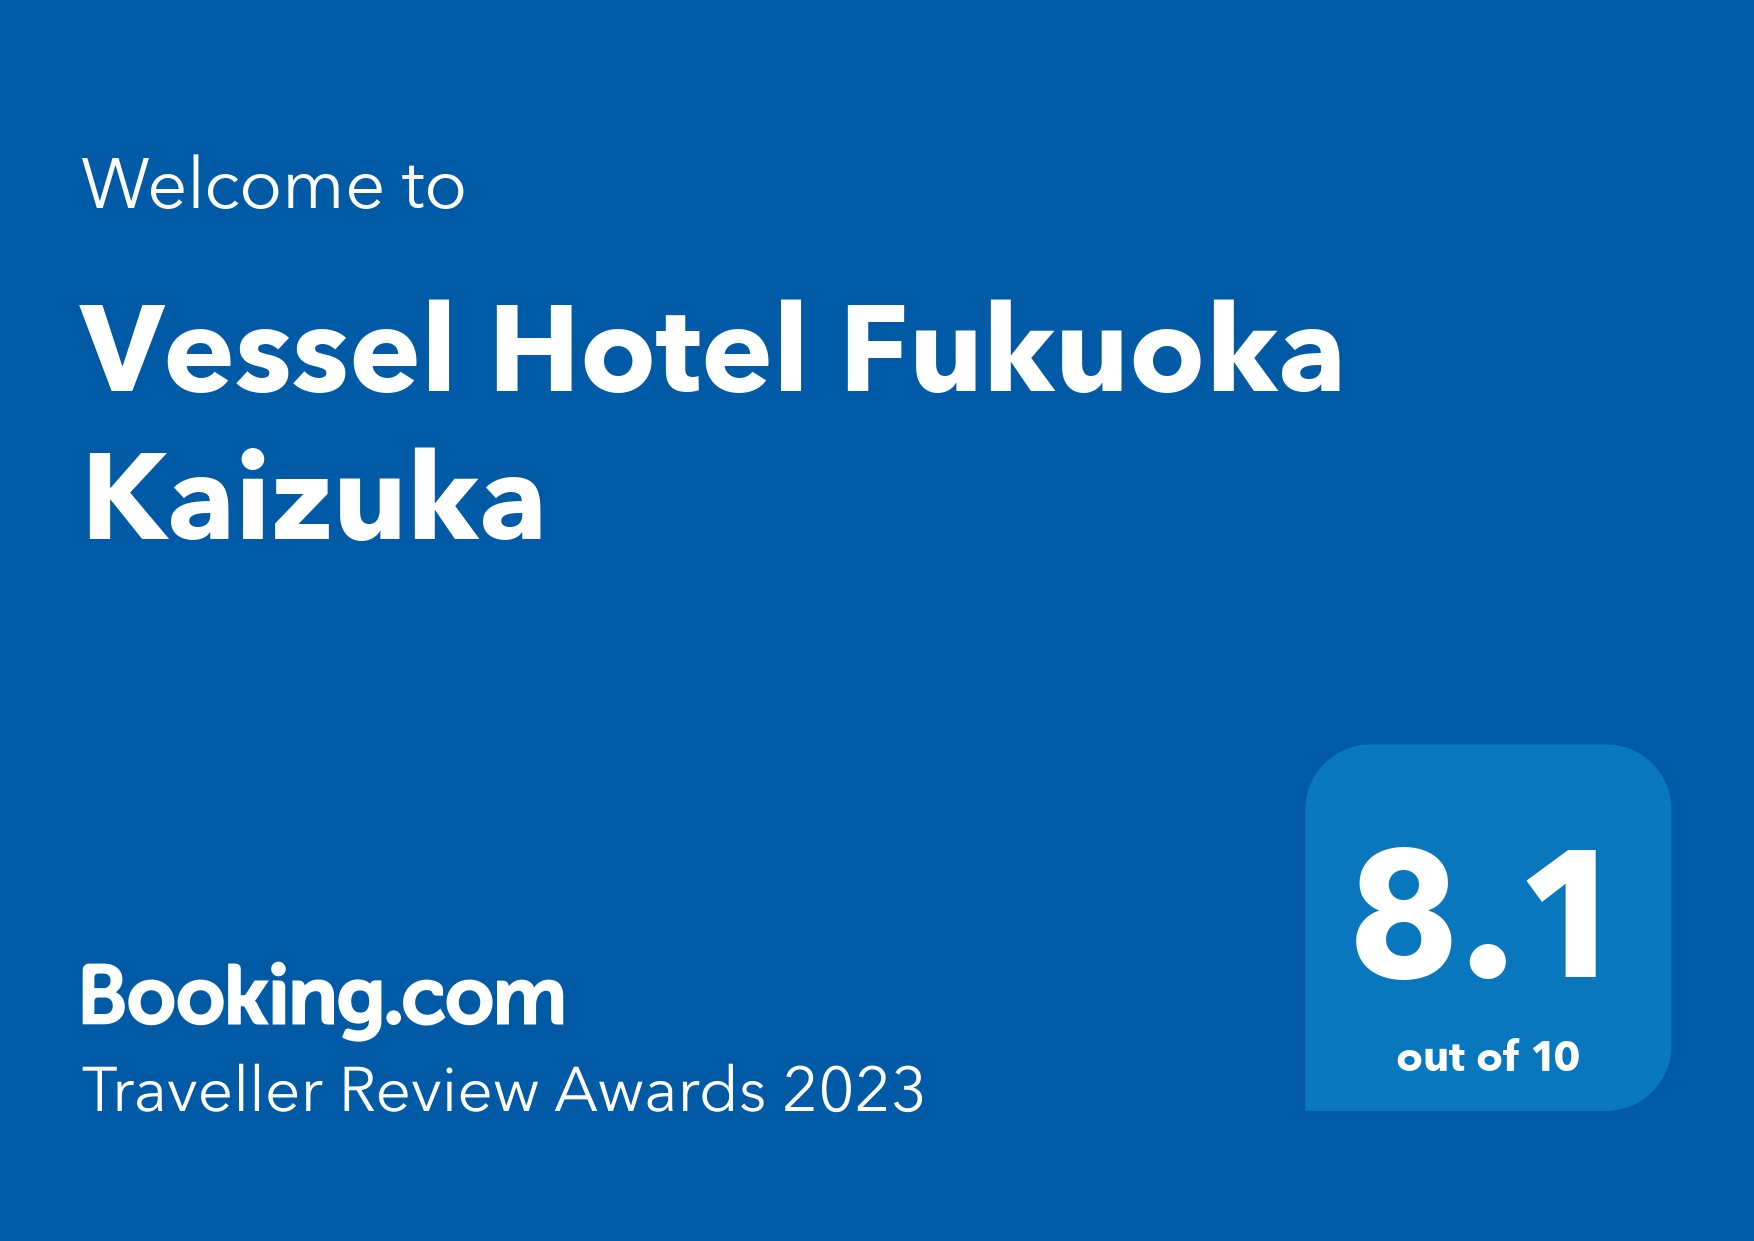 Booking.com<br>&#39;Traveller Review Awards 2023&#39; 수상